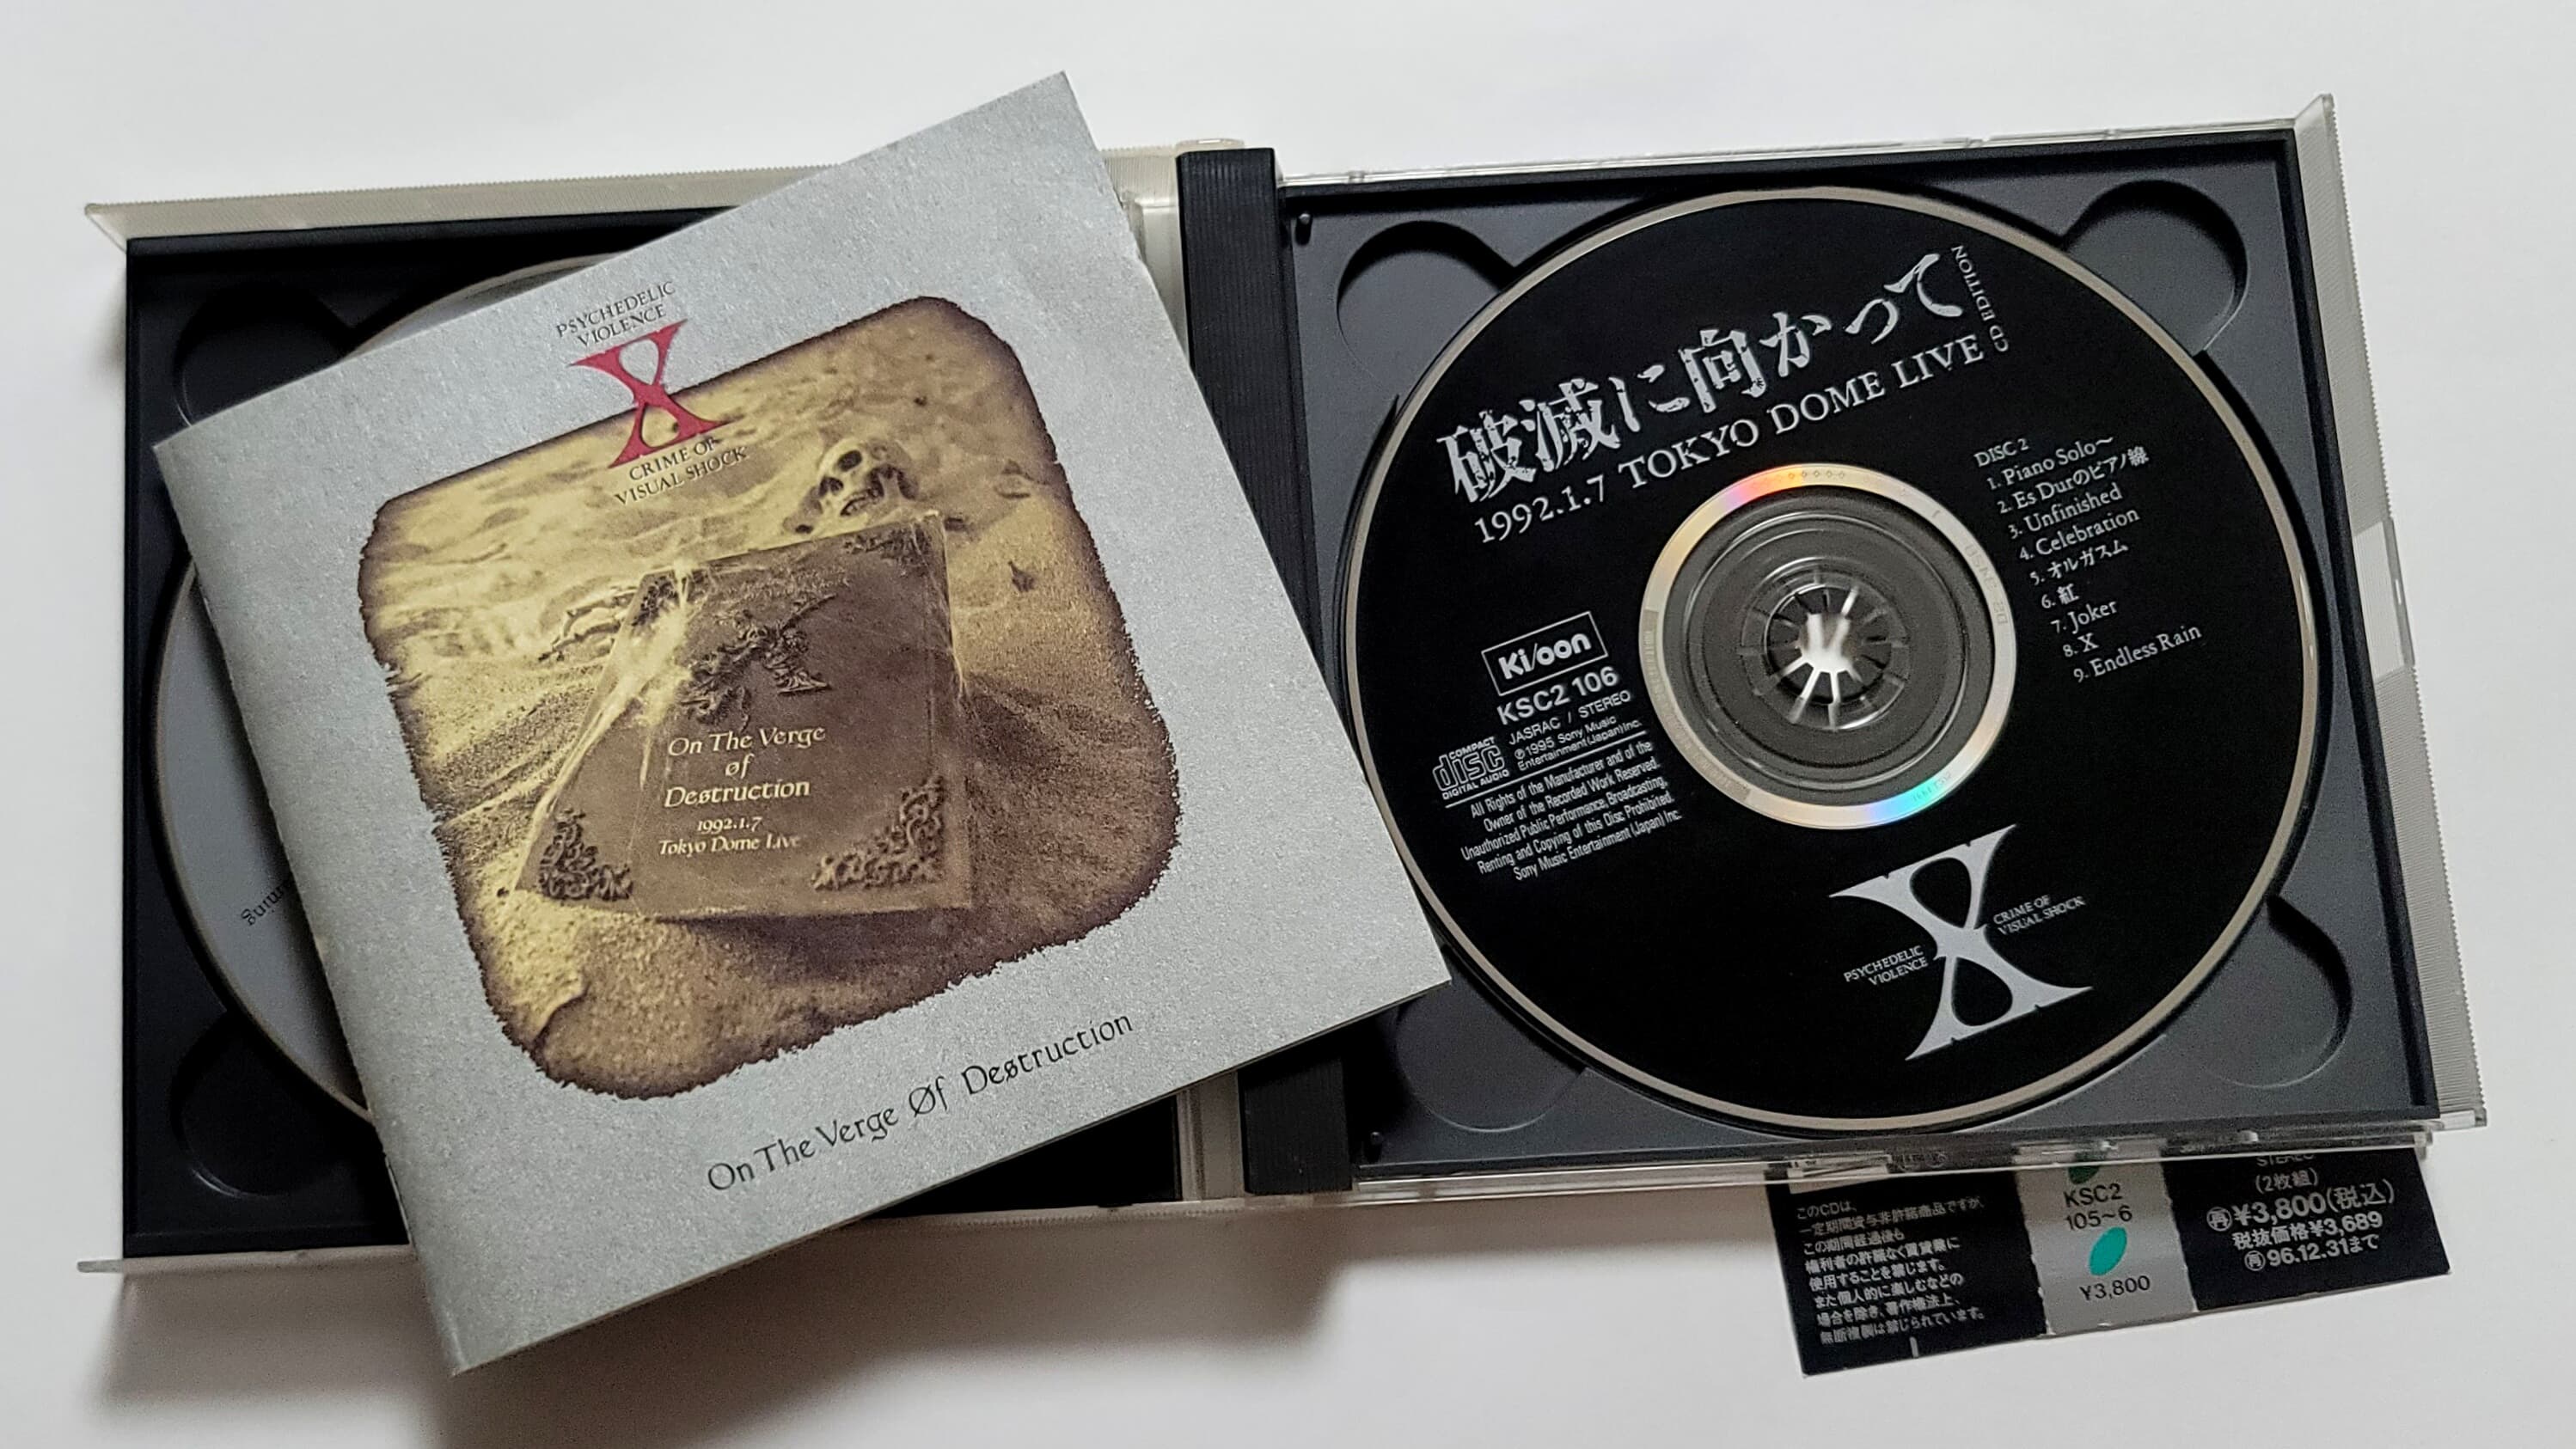 (2CD 일본반) X-JAPAN - 破滅に向かって 1992.1.7 TOKYO DOME LIVE